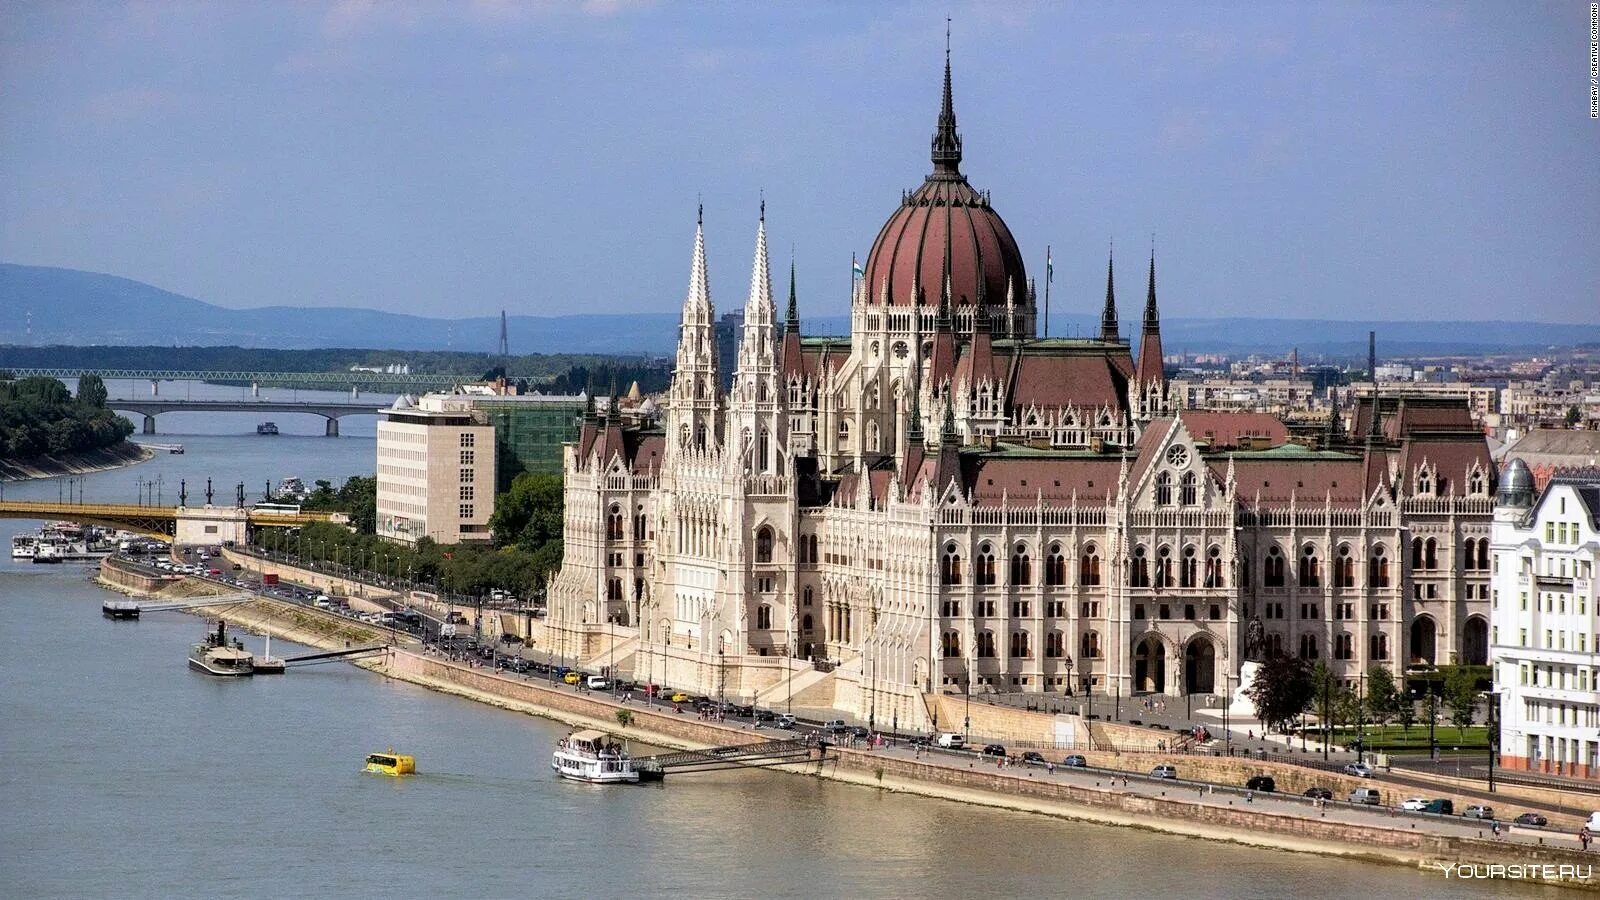 Достопримечательности среднего города. Здание парламента в Будапеште. Венгрия Будапешт парламент. Венгерский парламент в Будапеште. Будапешт дворец парламента.